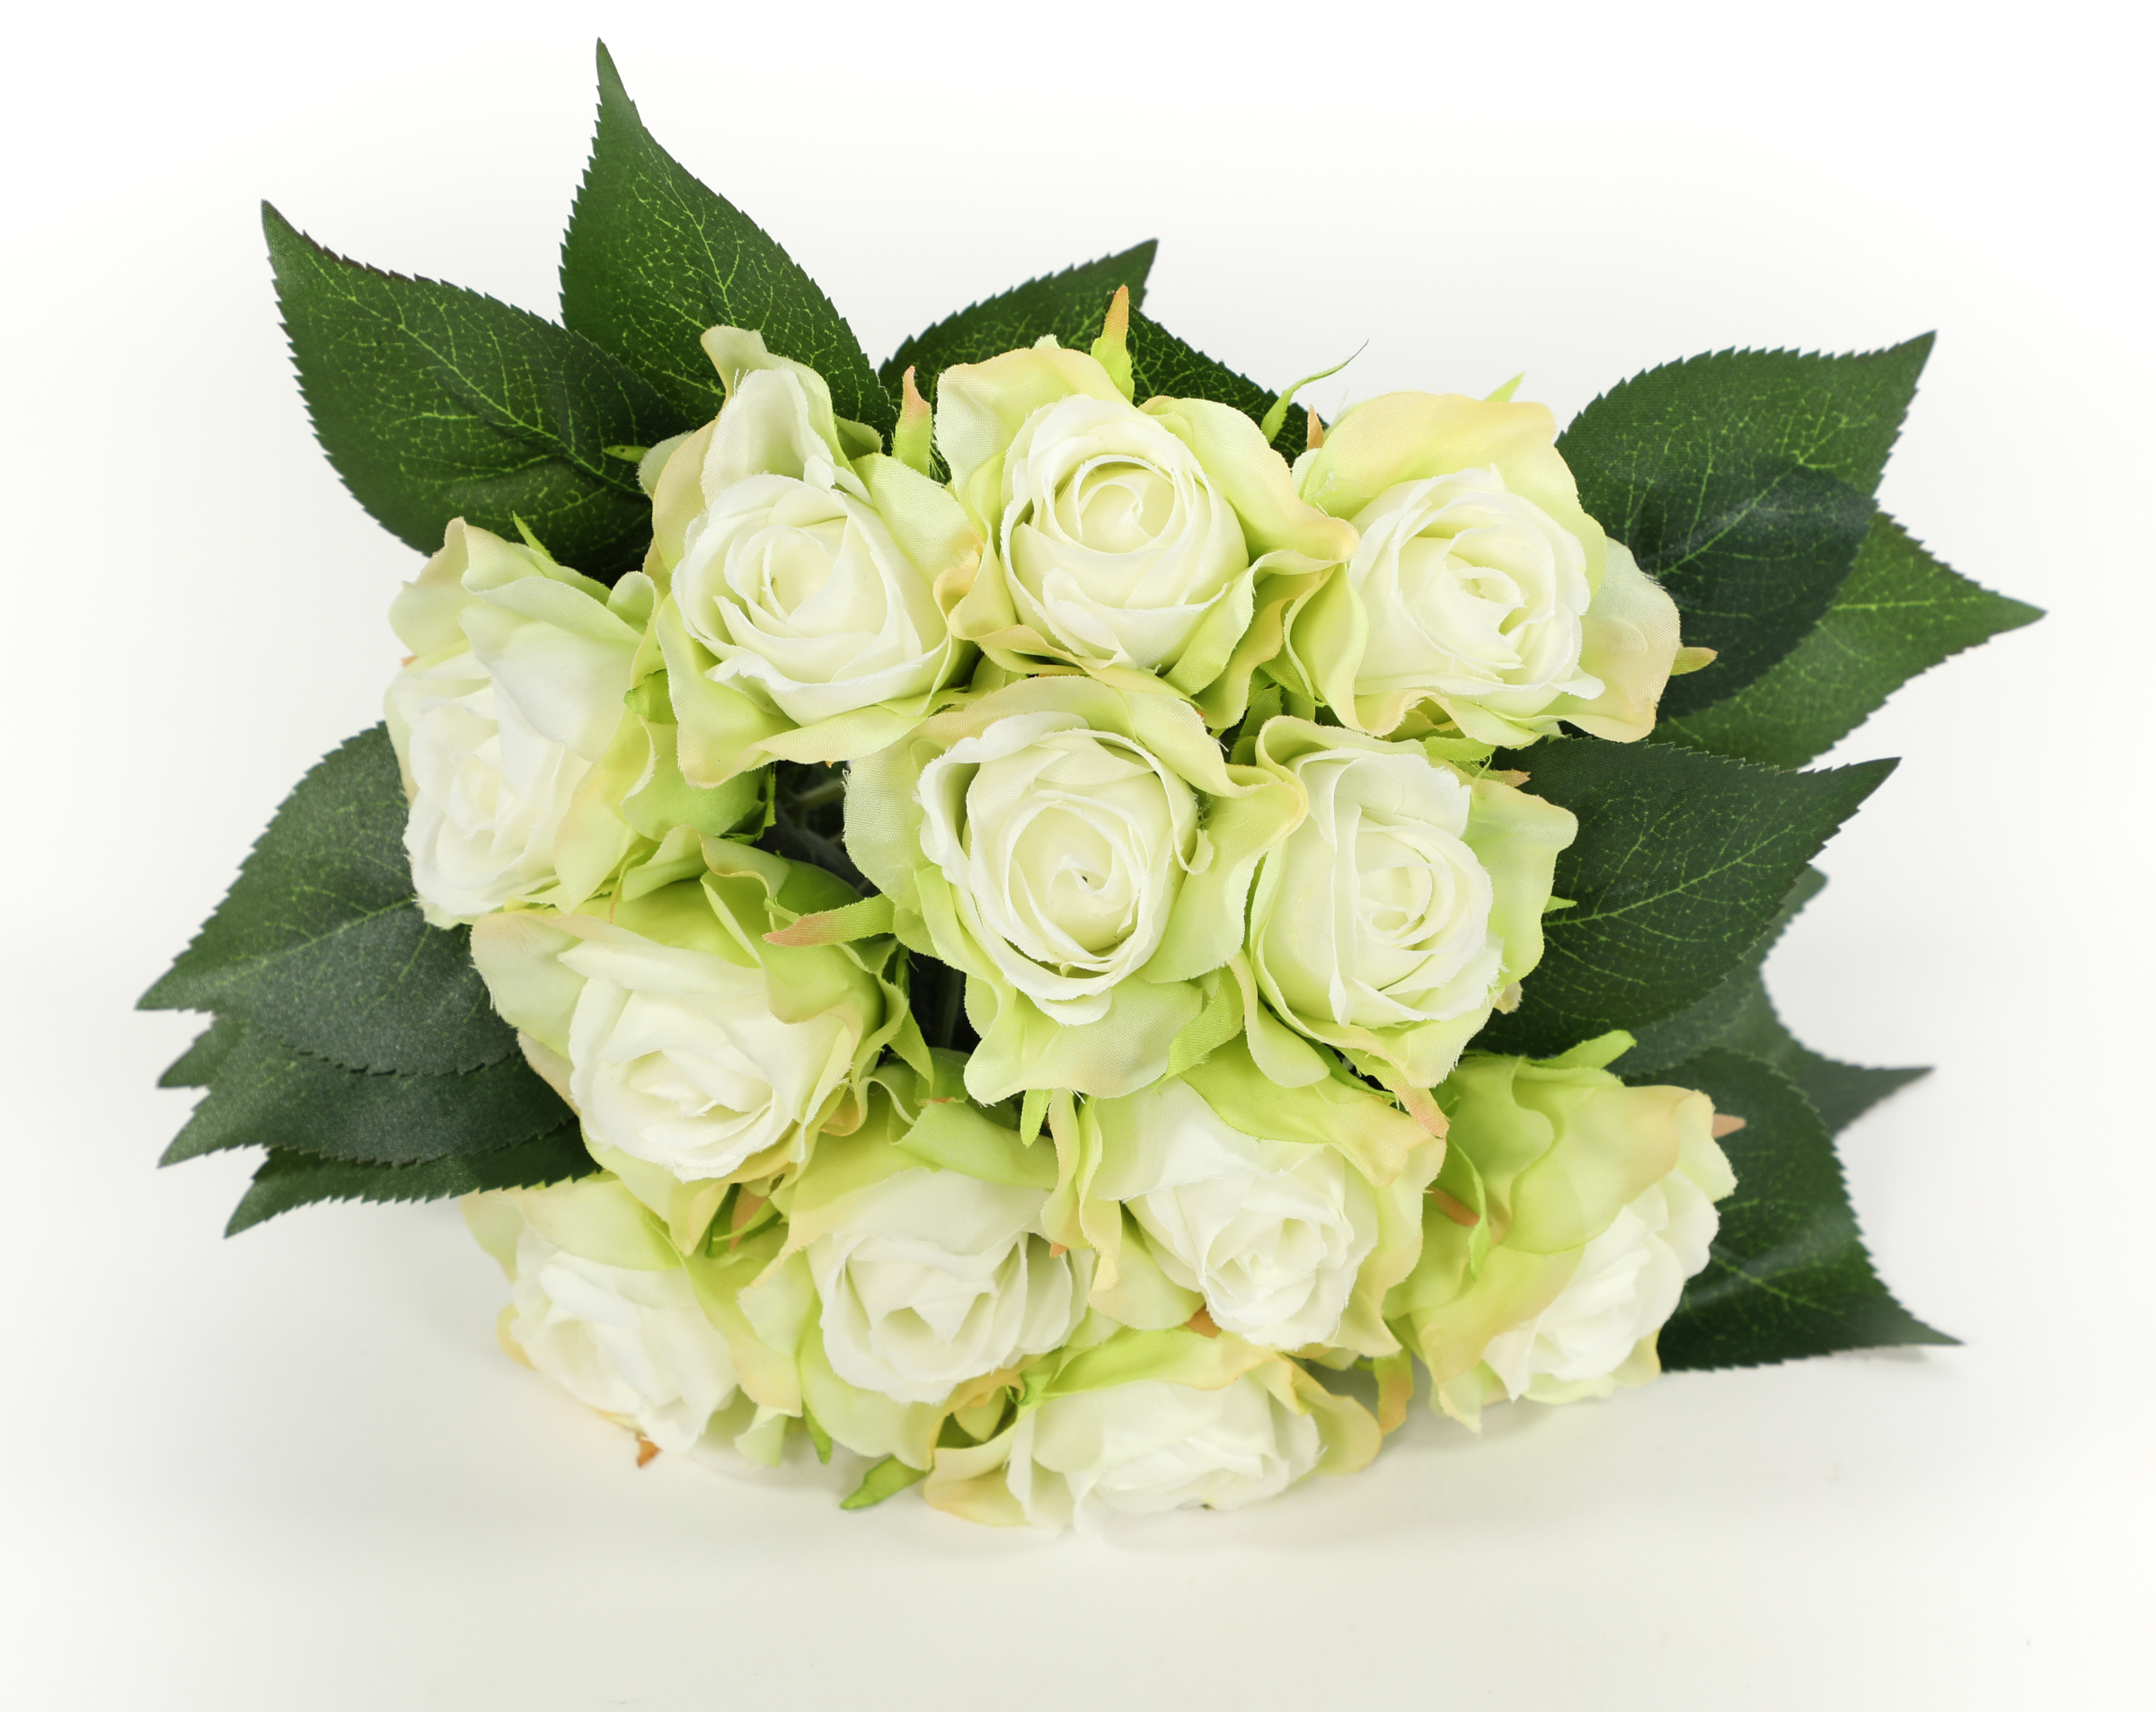 Rosenbouquet 25cm weiß-grün mit 12 Rosen CG Kunstblumen künstlicher Strauß  Rosen Rosenstrauß